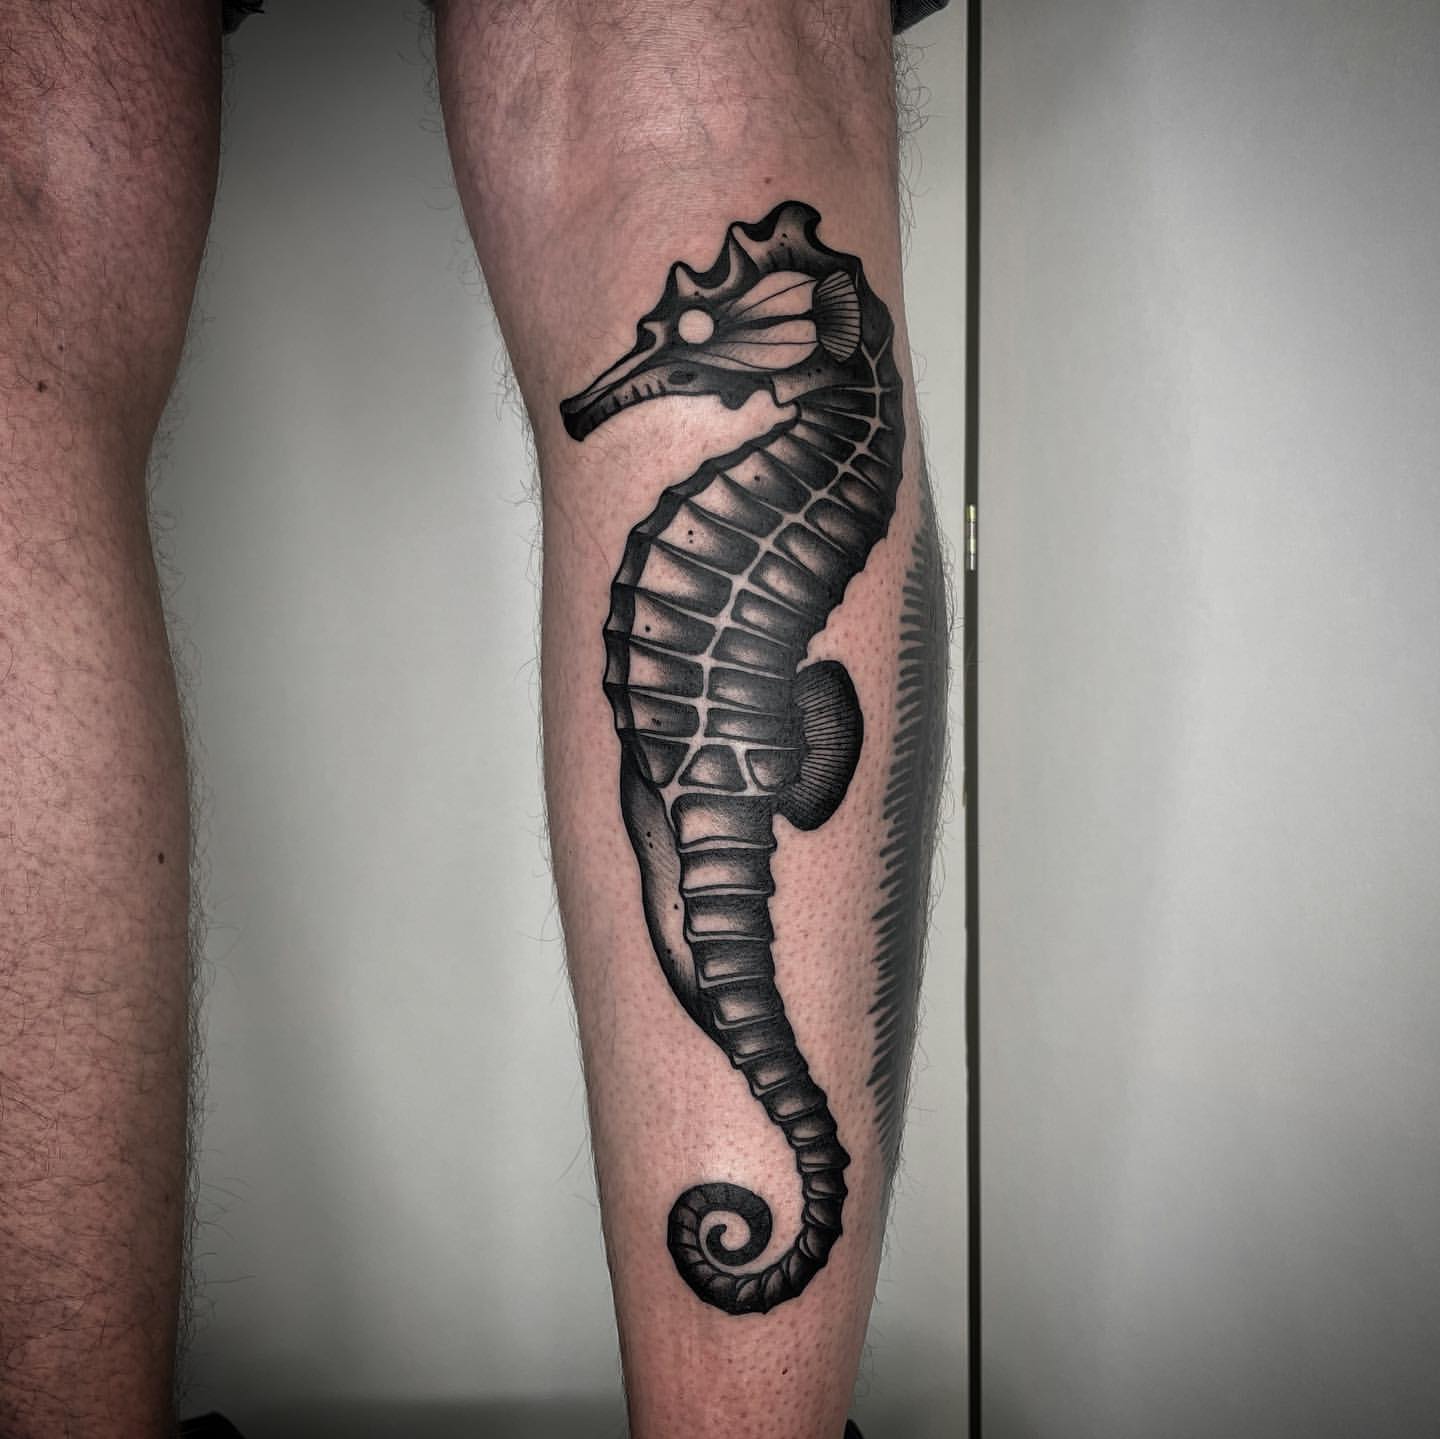 Seahorse Tattoo Ideas 25